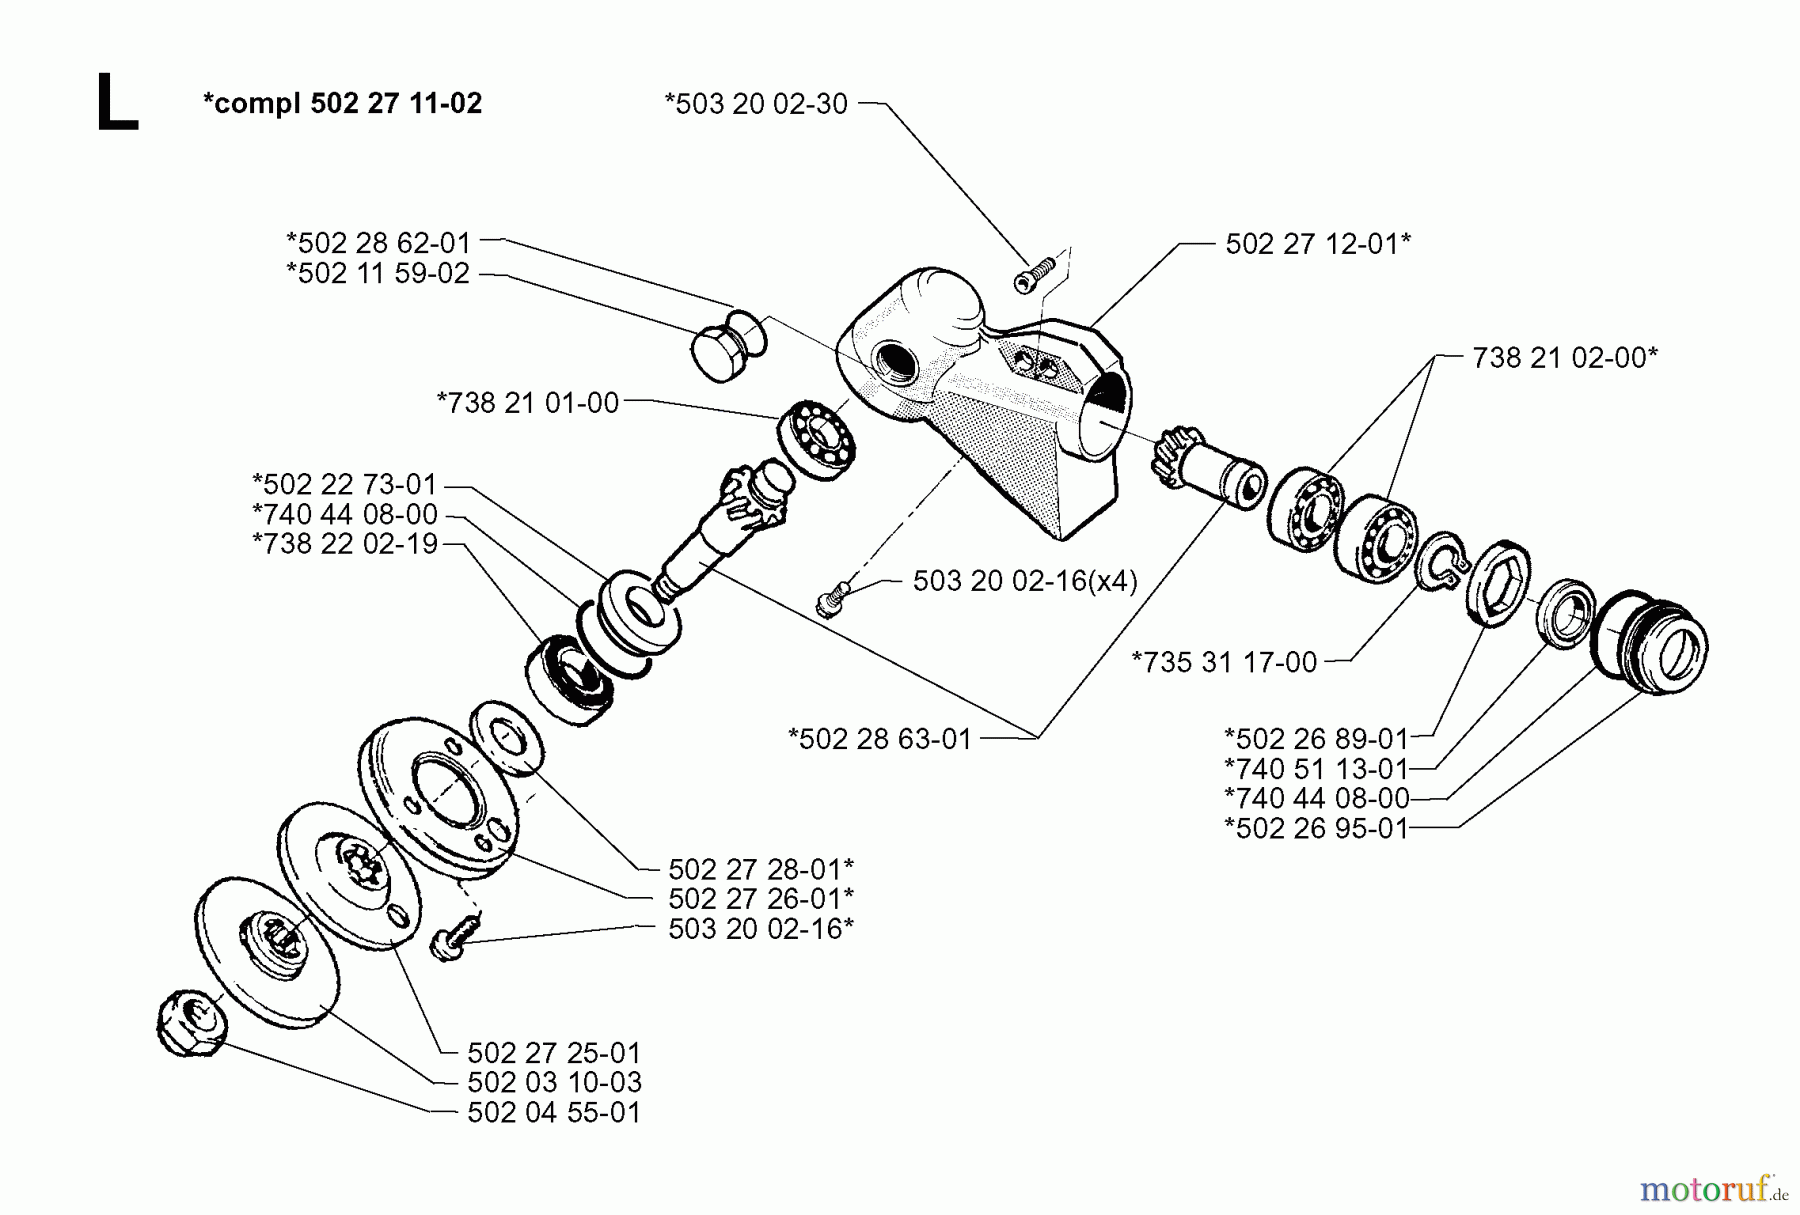  Jonsered Motorsensen, Trimmer RS52 - Jonsered String/Brush Trimmer (1999-04) BEVEL GEAR